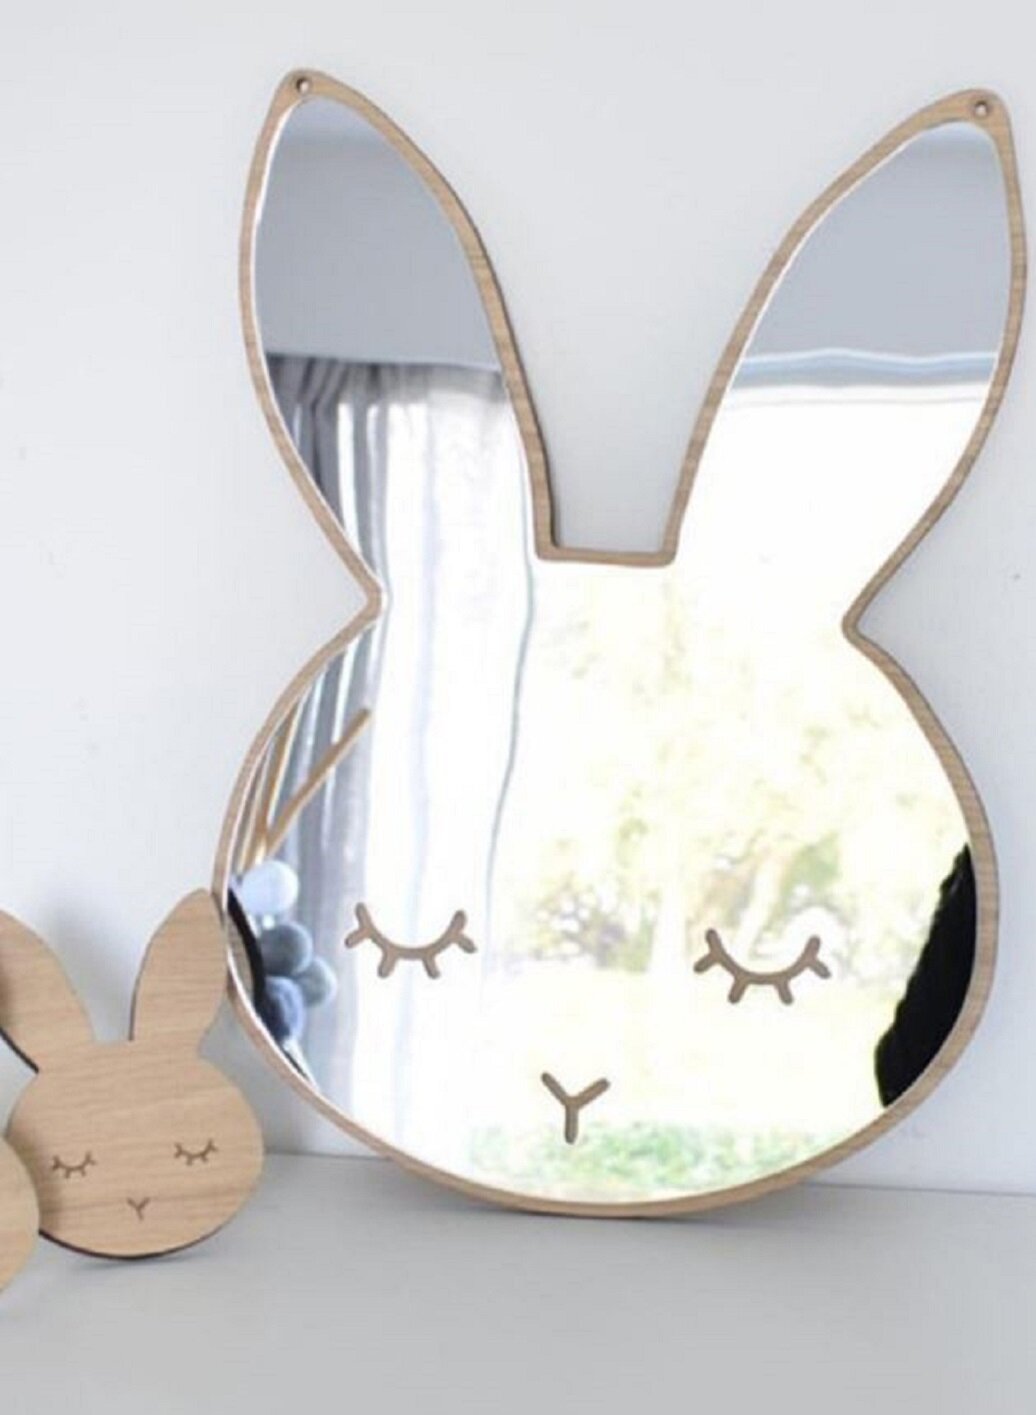 Bunny mirror